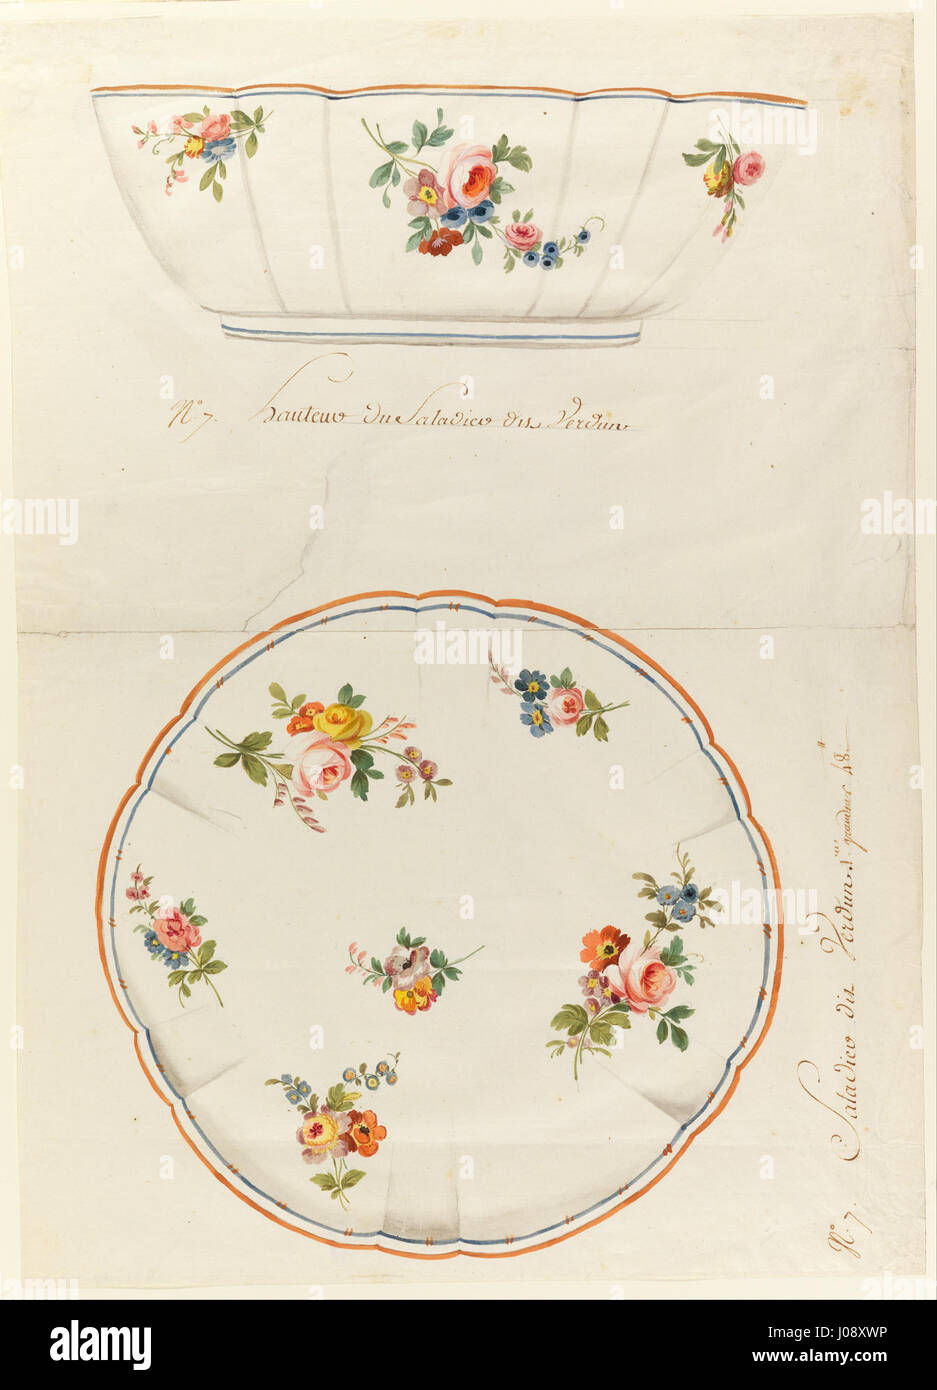 Sèvres Porcelain Manufactory - Design for a Painted Porcelain Scalloped Salad Bowl, for Sèvres Porcelain Manufactury - Stock Photo